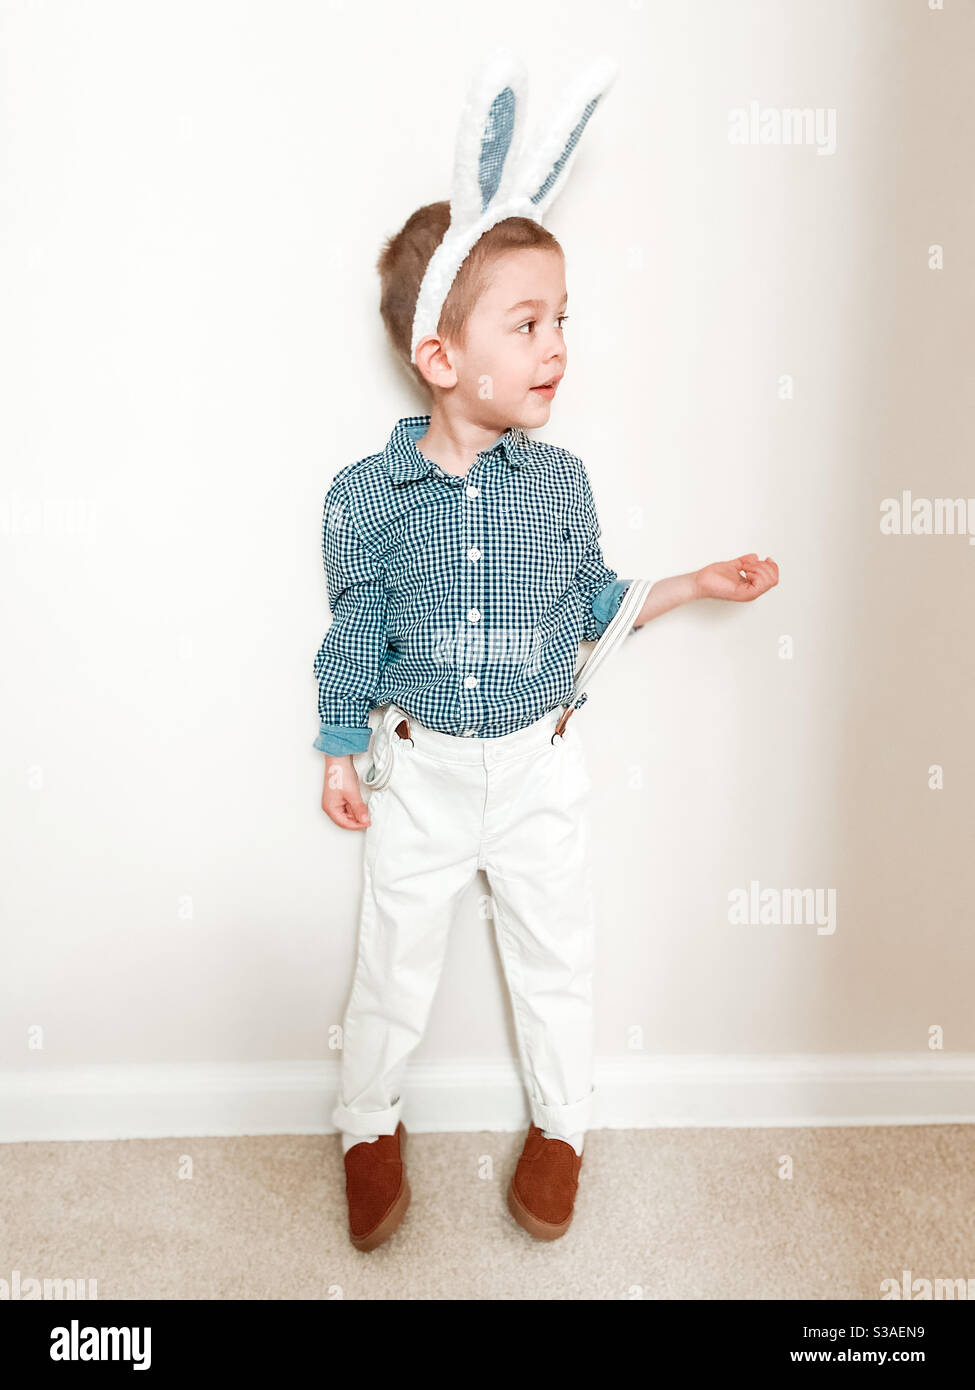 Der kleine blonde Junge feiert Ostern mit Hasenohren, weißen Hosen und einem karierten Hemd. Stockfoto